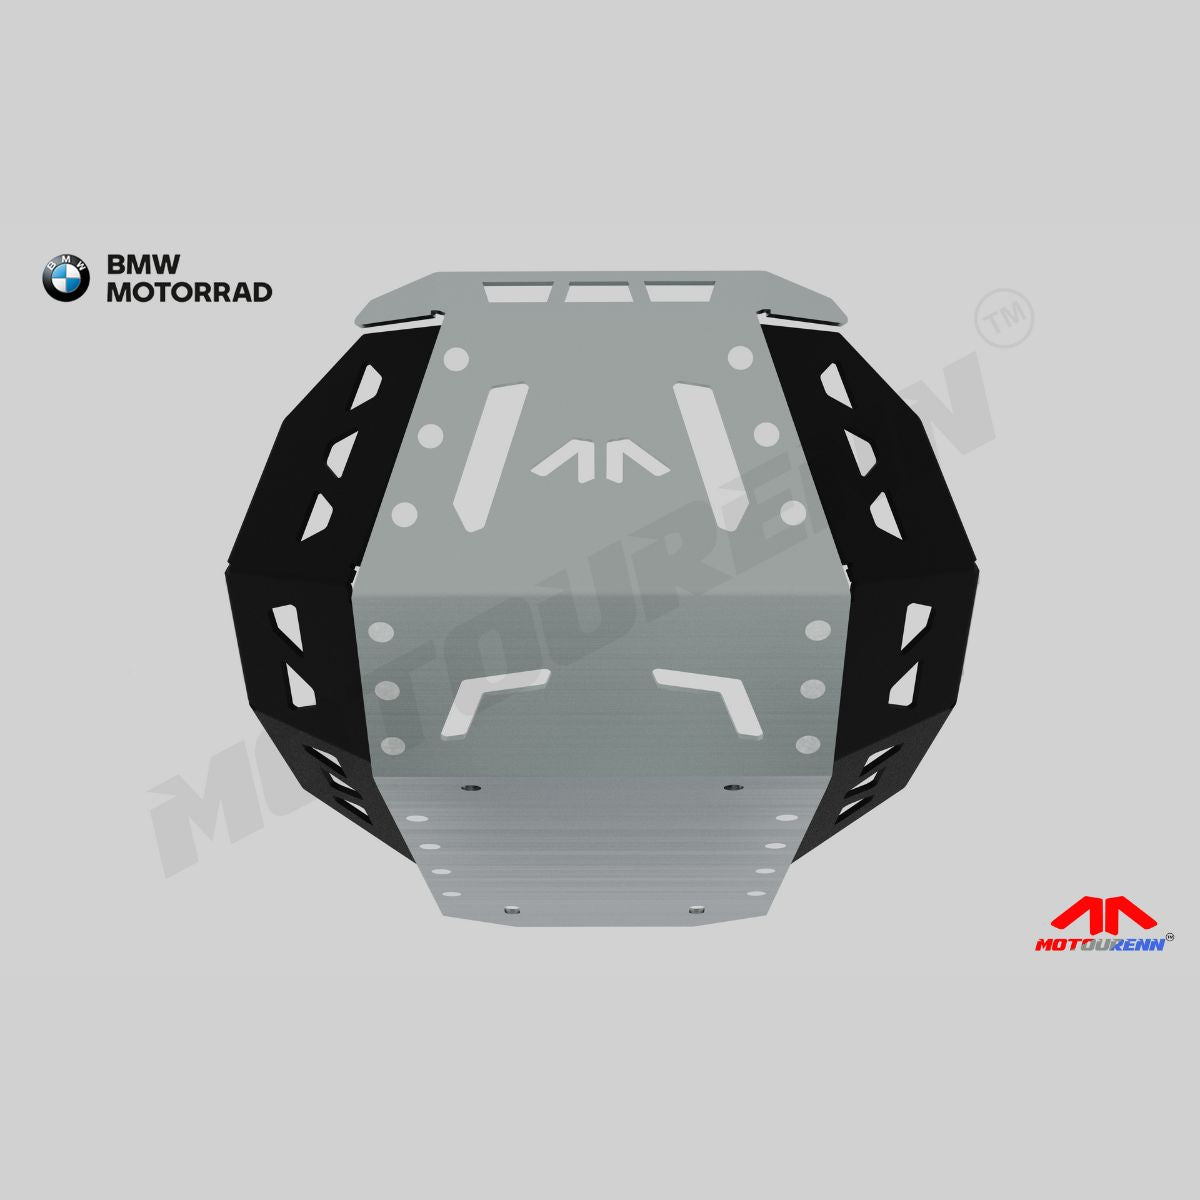 Motourenn BMW 310 GS Aluminium Bash Plate - 5